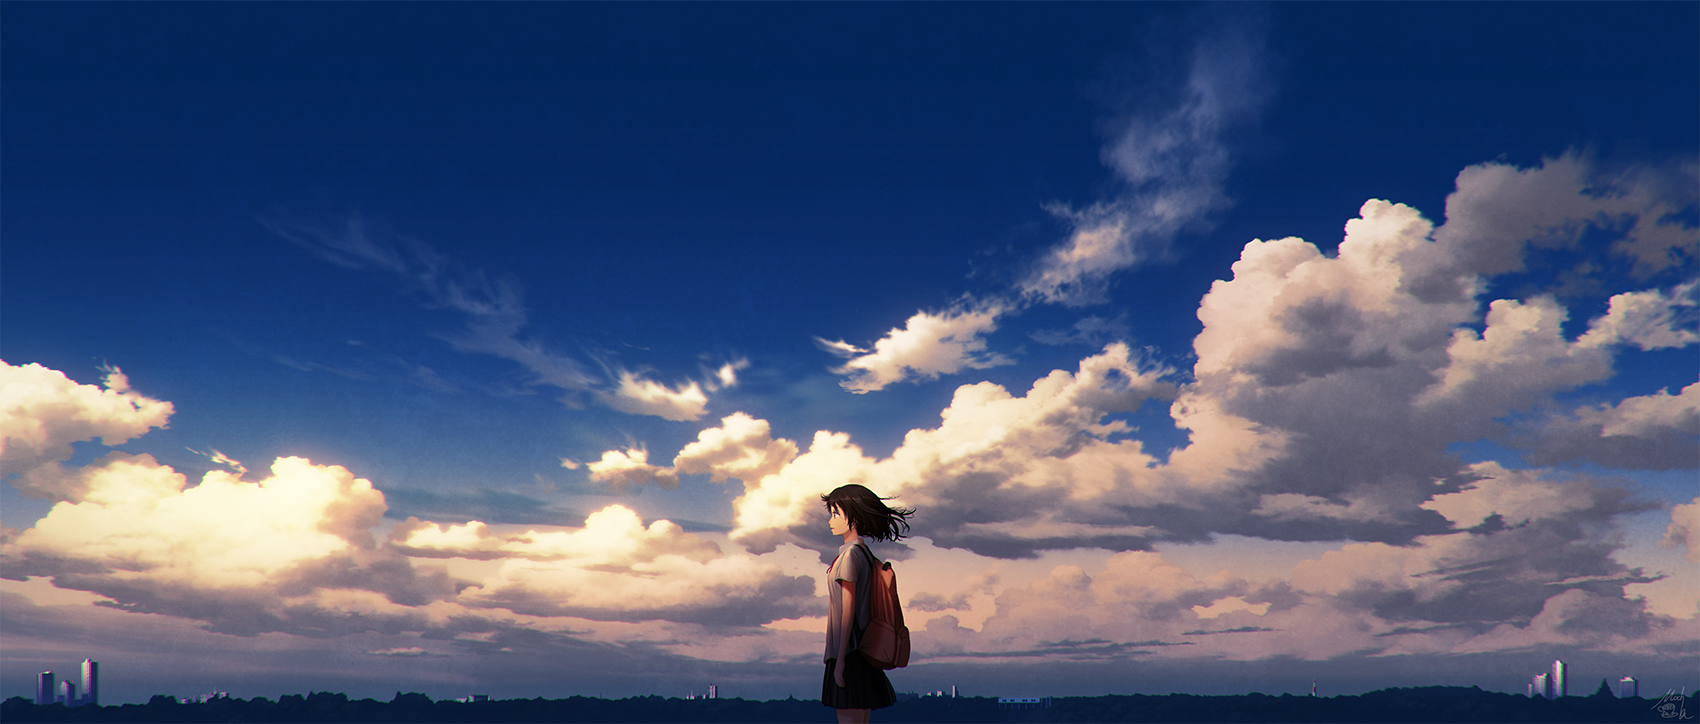 Фото Девушка в школьной форме на фоне облачного неба, by mocha